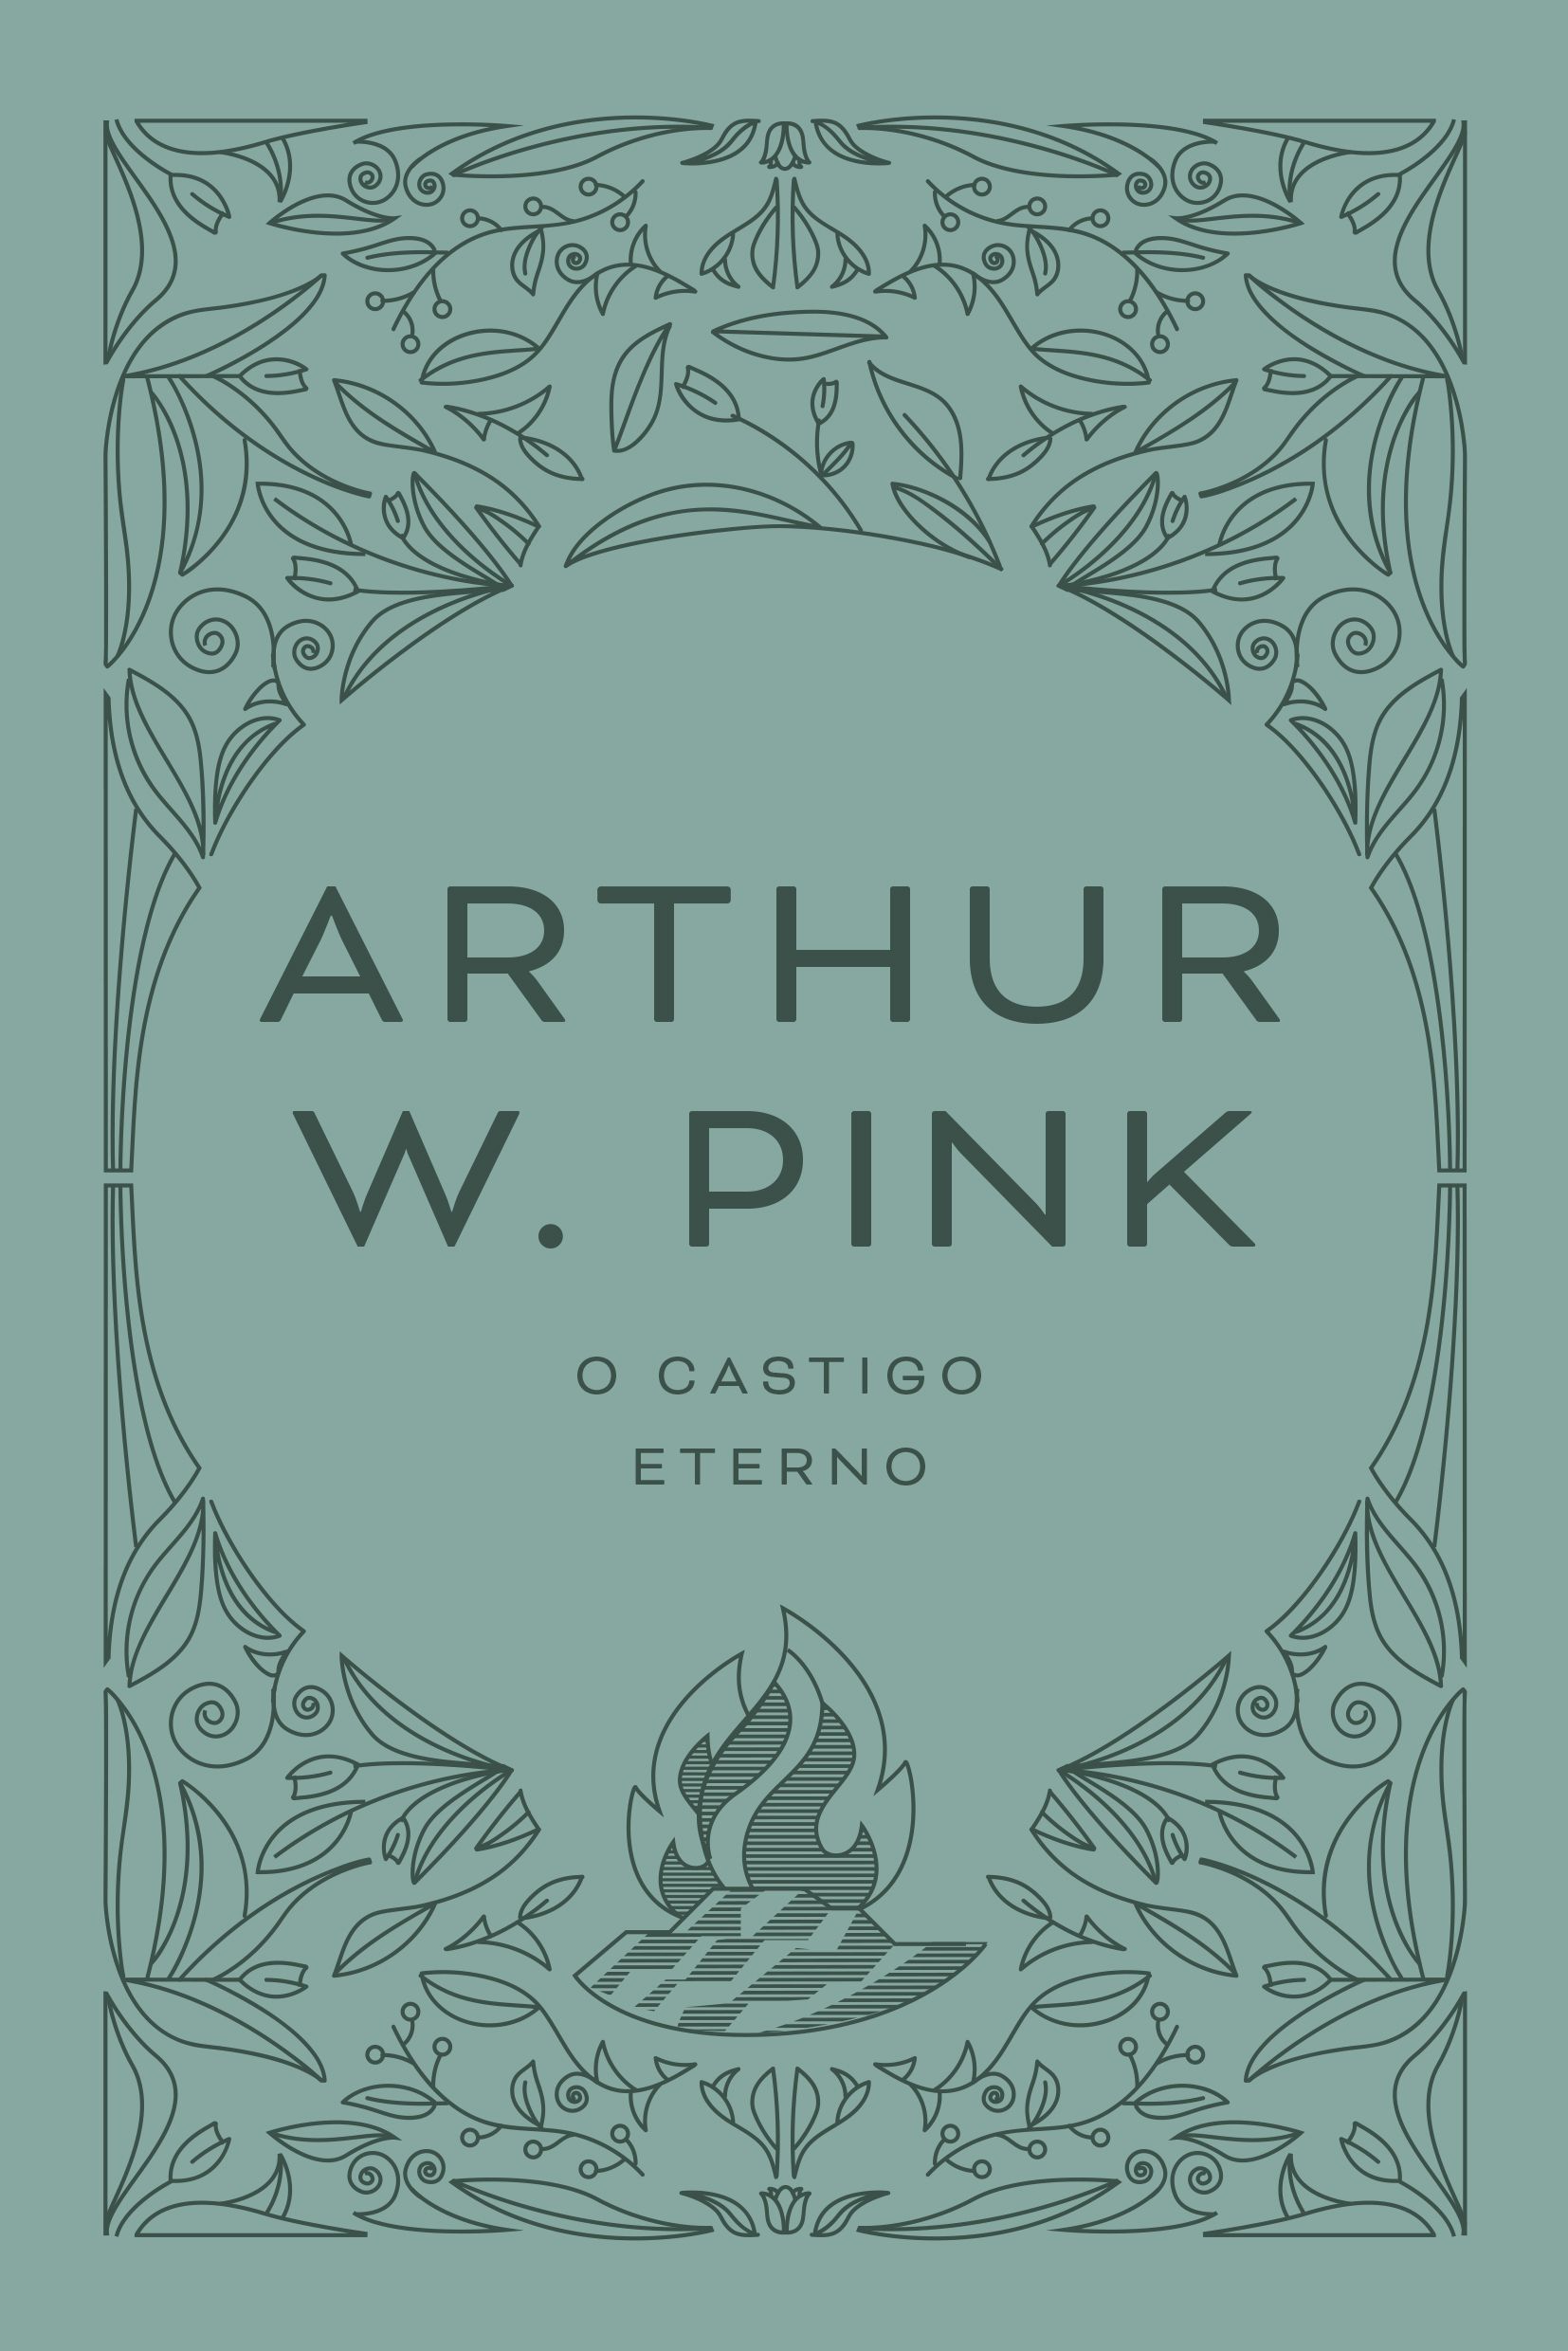 O castigo eterno – arthur w. pink